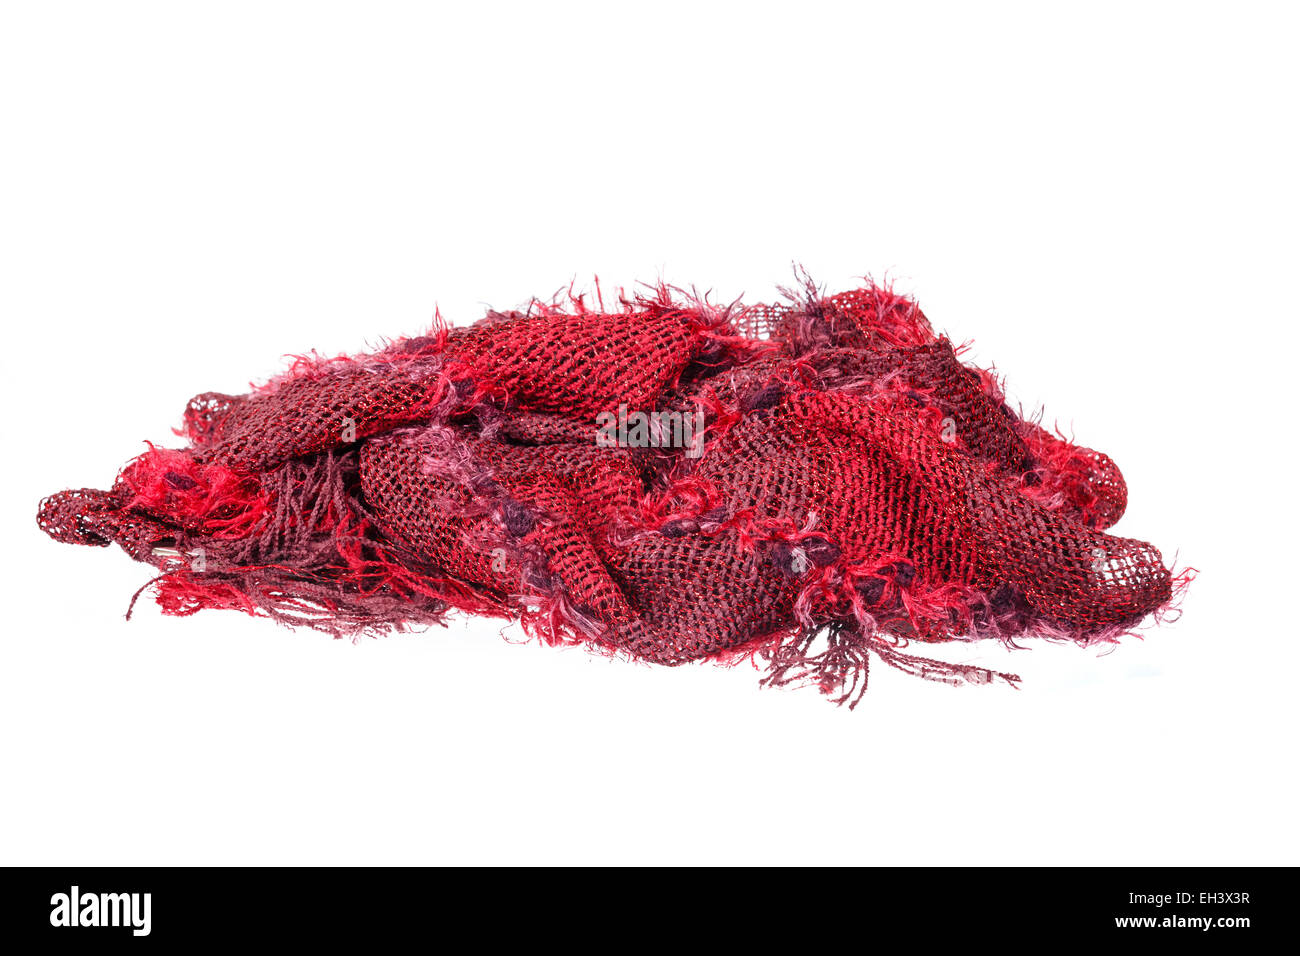 Rouge bijou neckwear ou écharpe en laine de texture tricots isolé sur fond blanc. Shoot studio propre de fe Banque D'Images